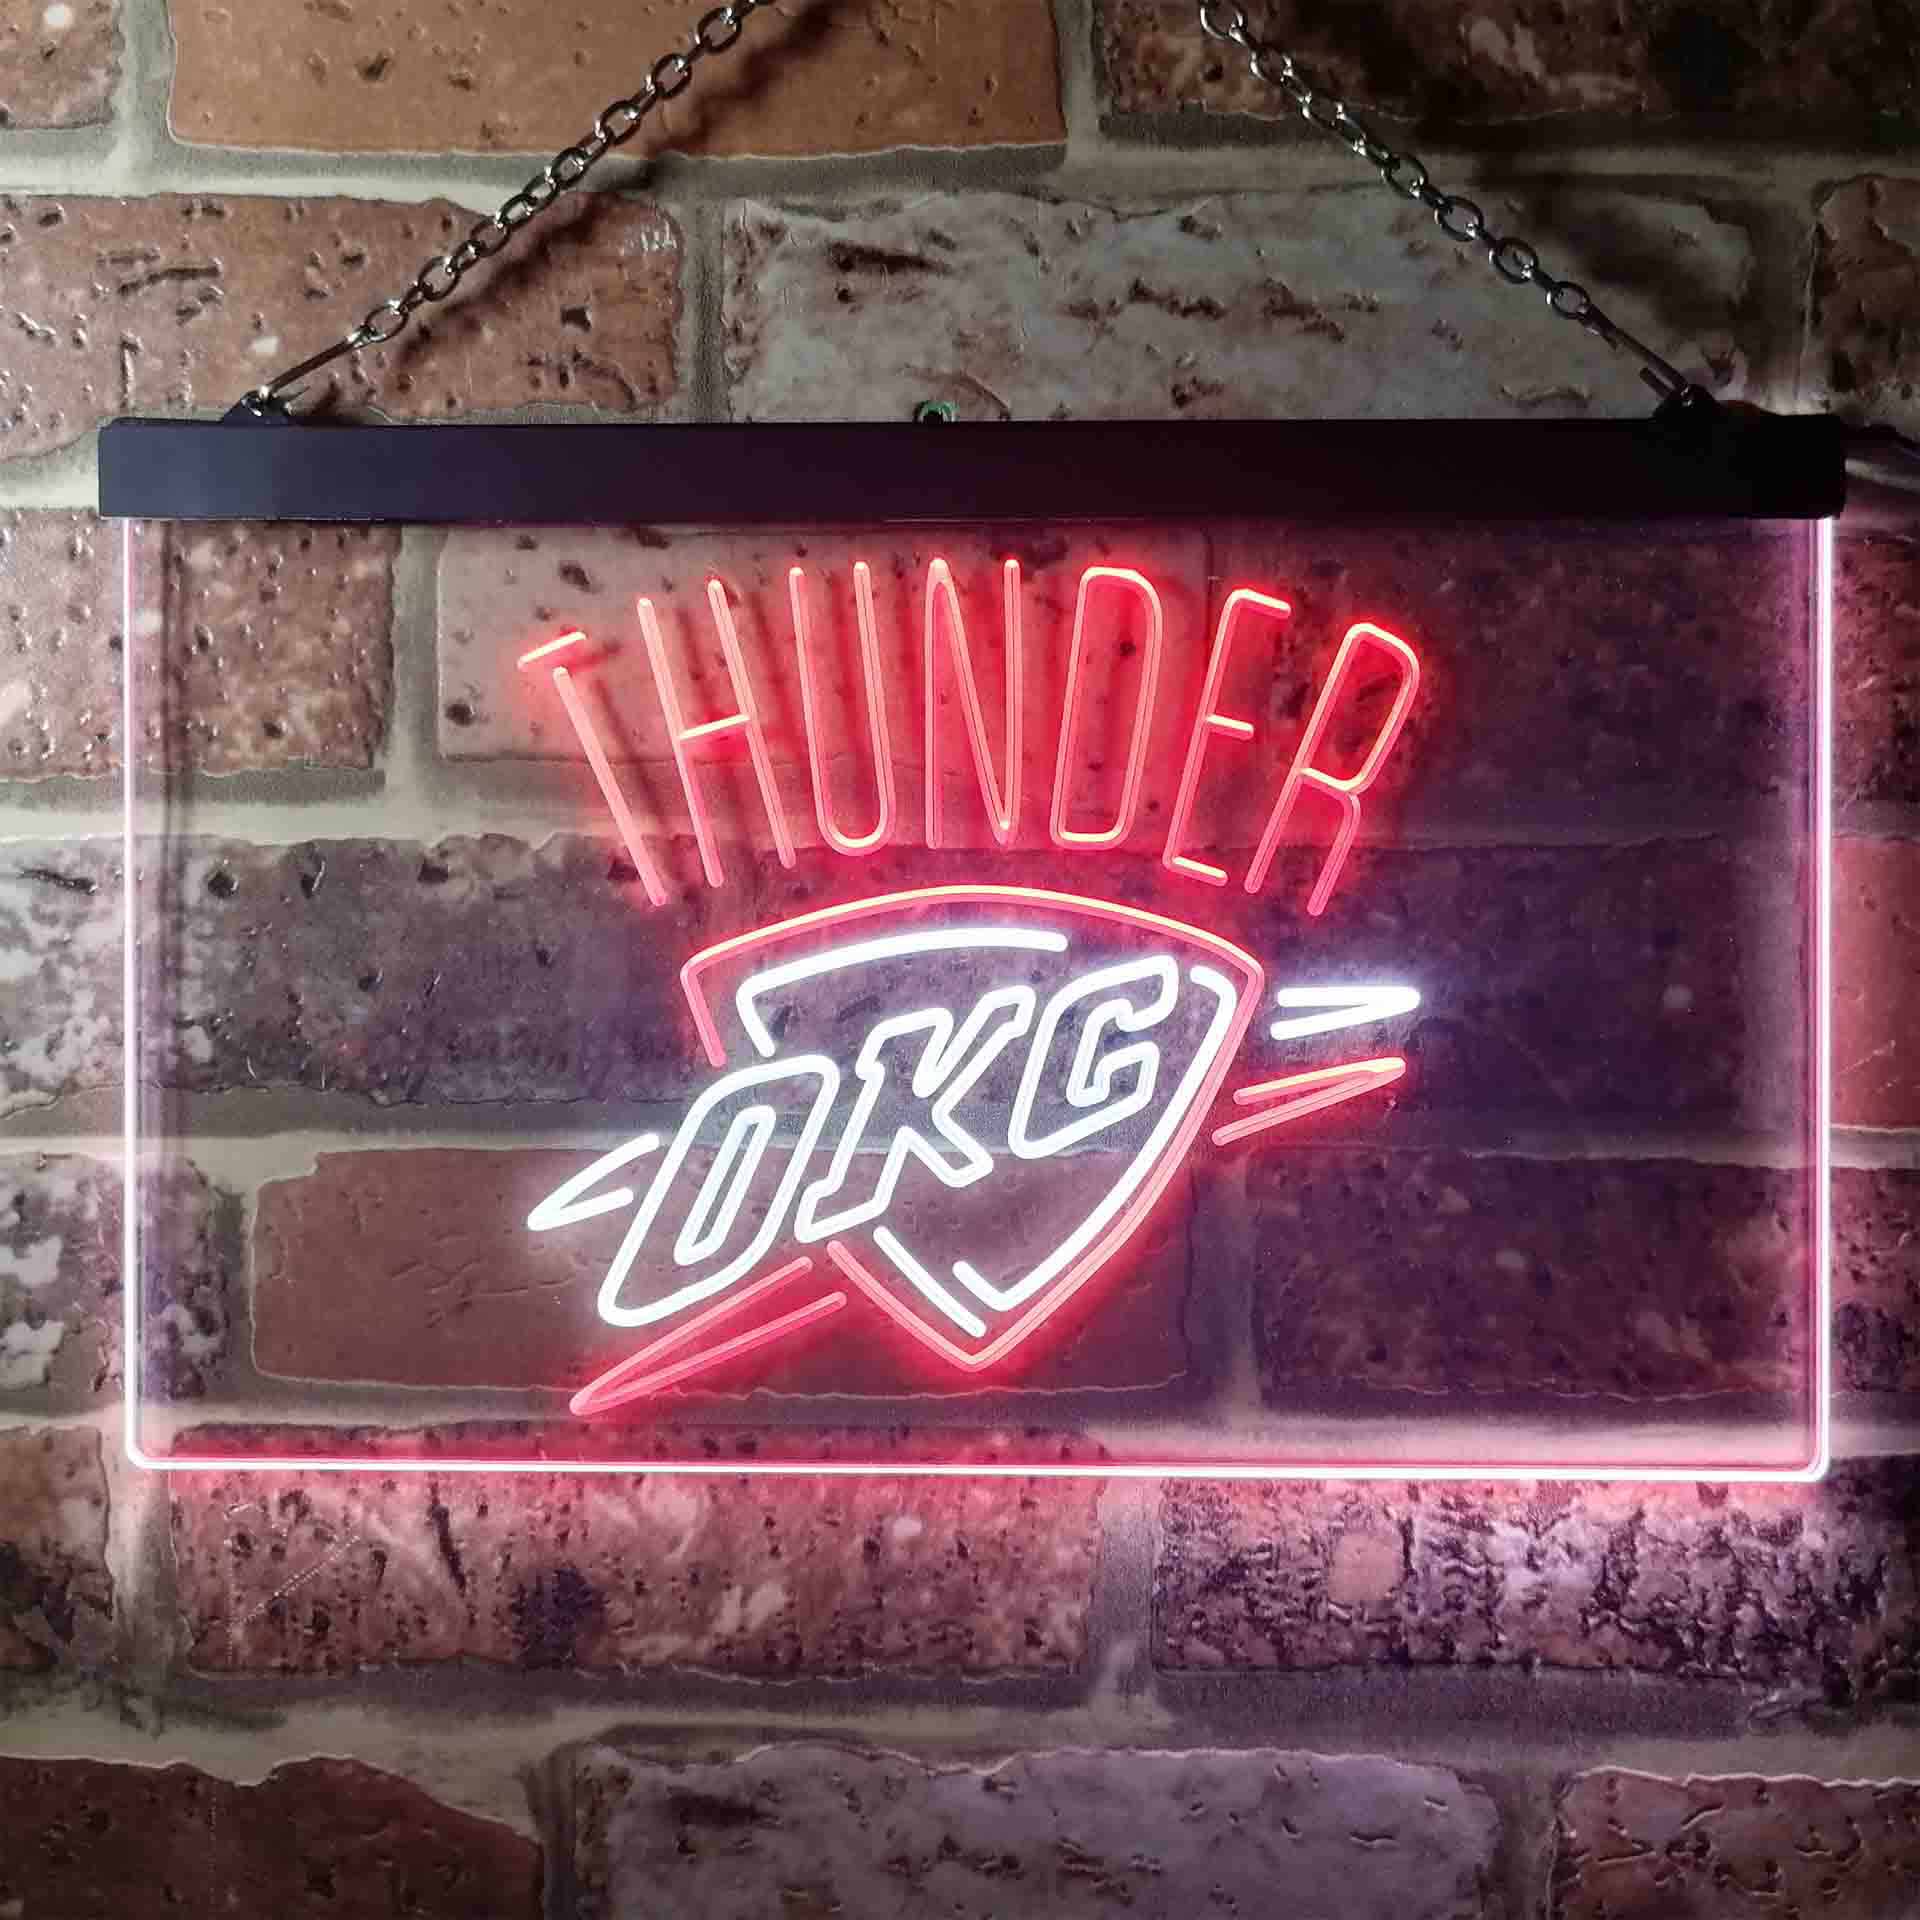 Oklahoma City Thunder LED Neon Sign